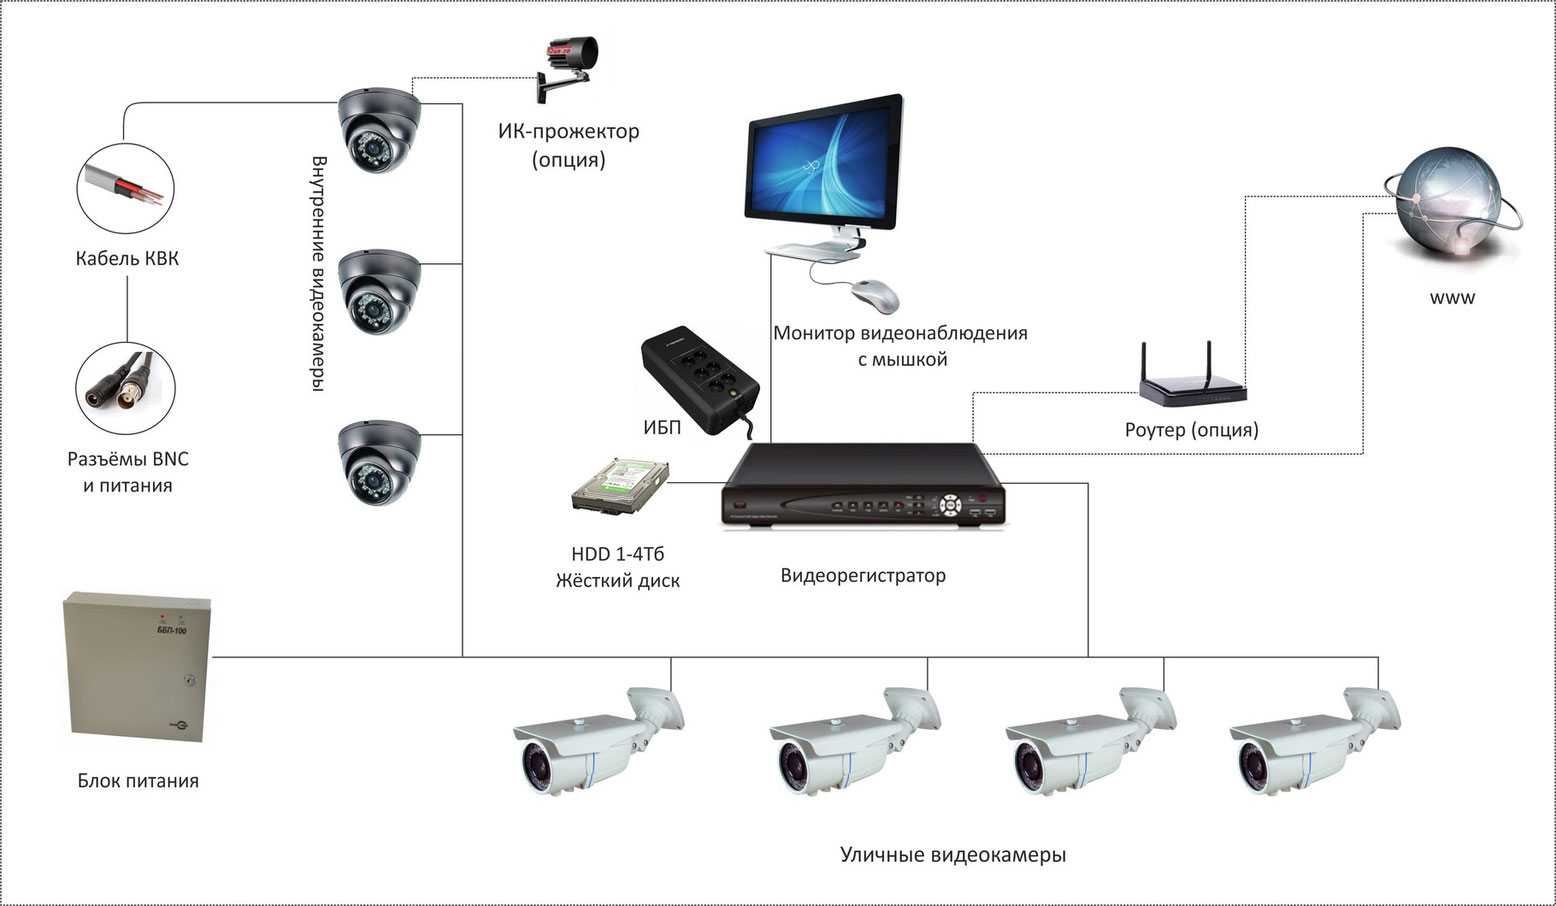 Современные системы видеонаблюдения — от концепций до воплощения / хабр